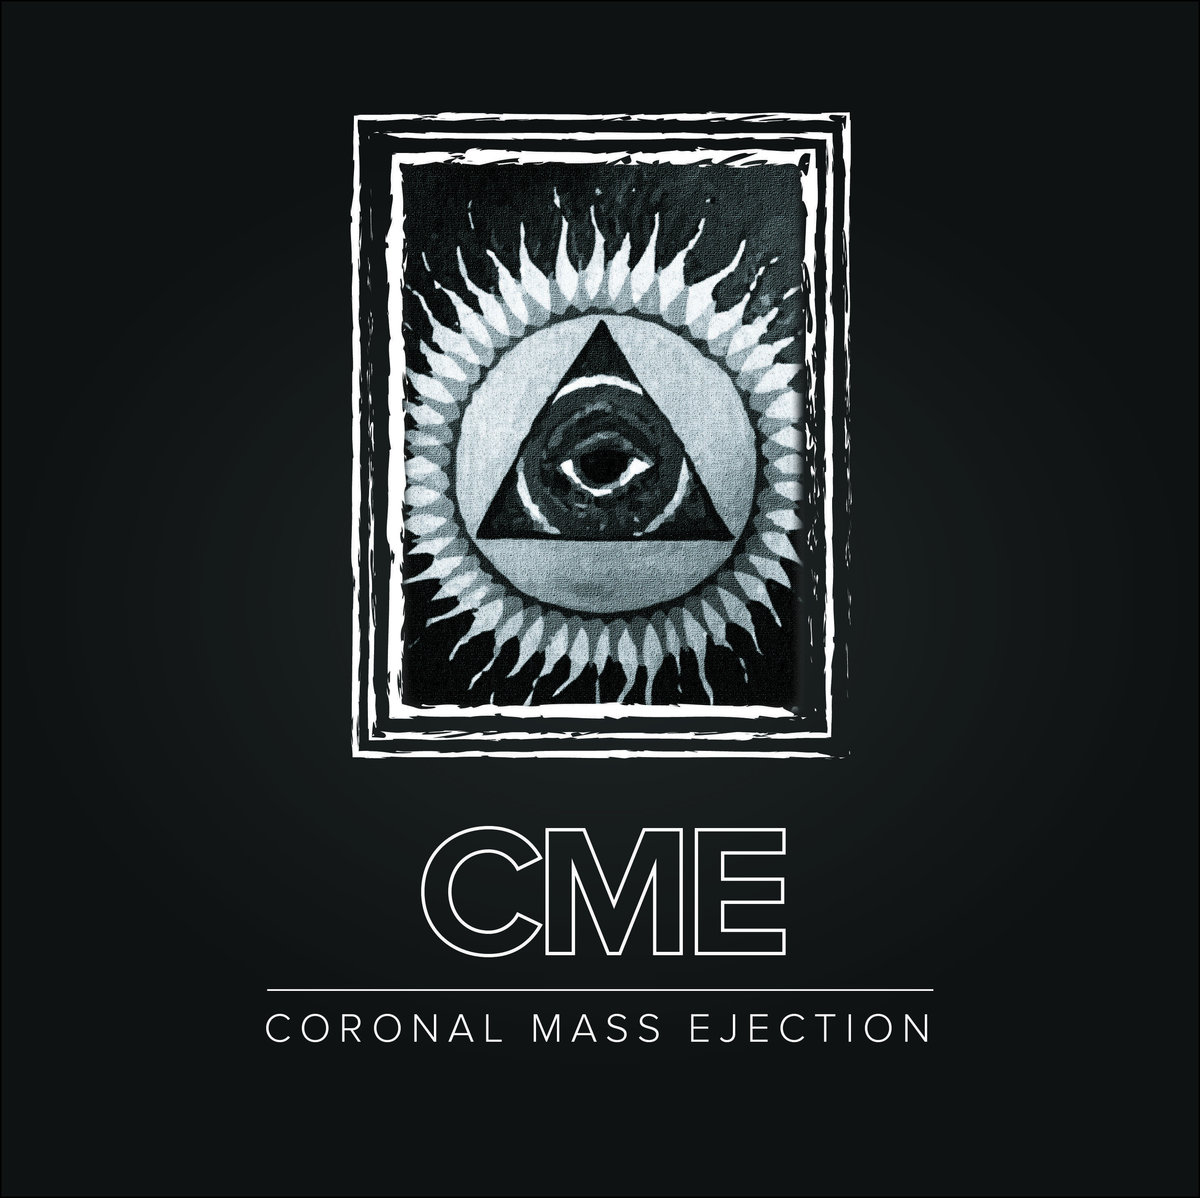  Coronal Mass Ejection